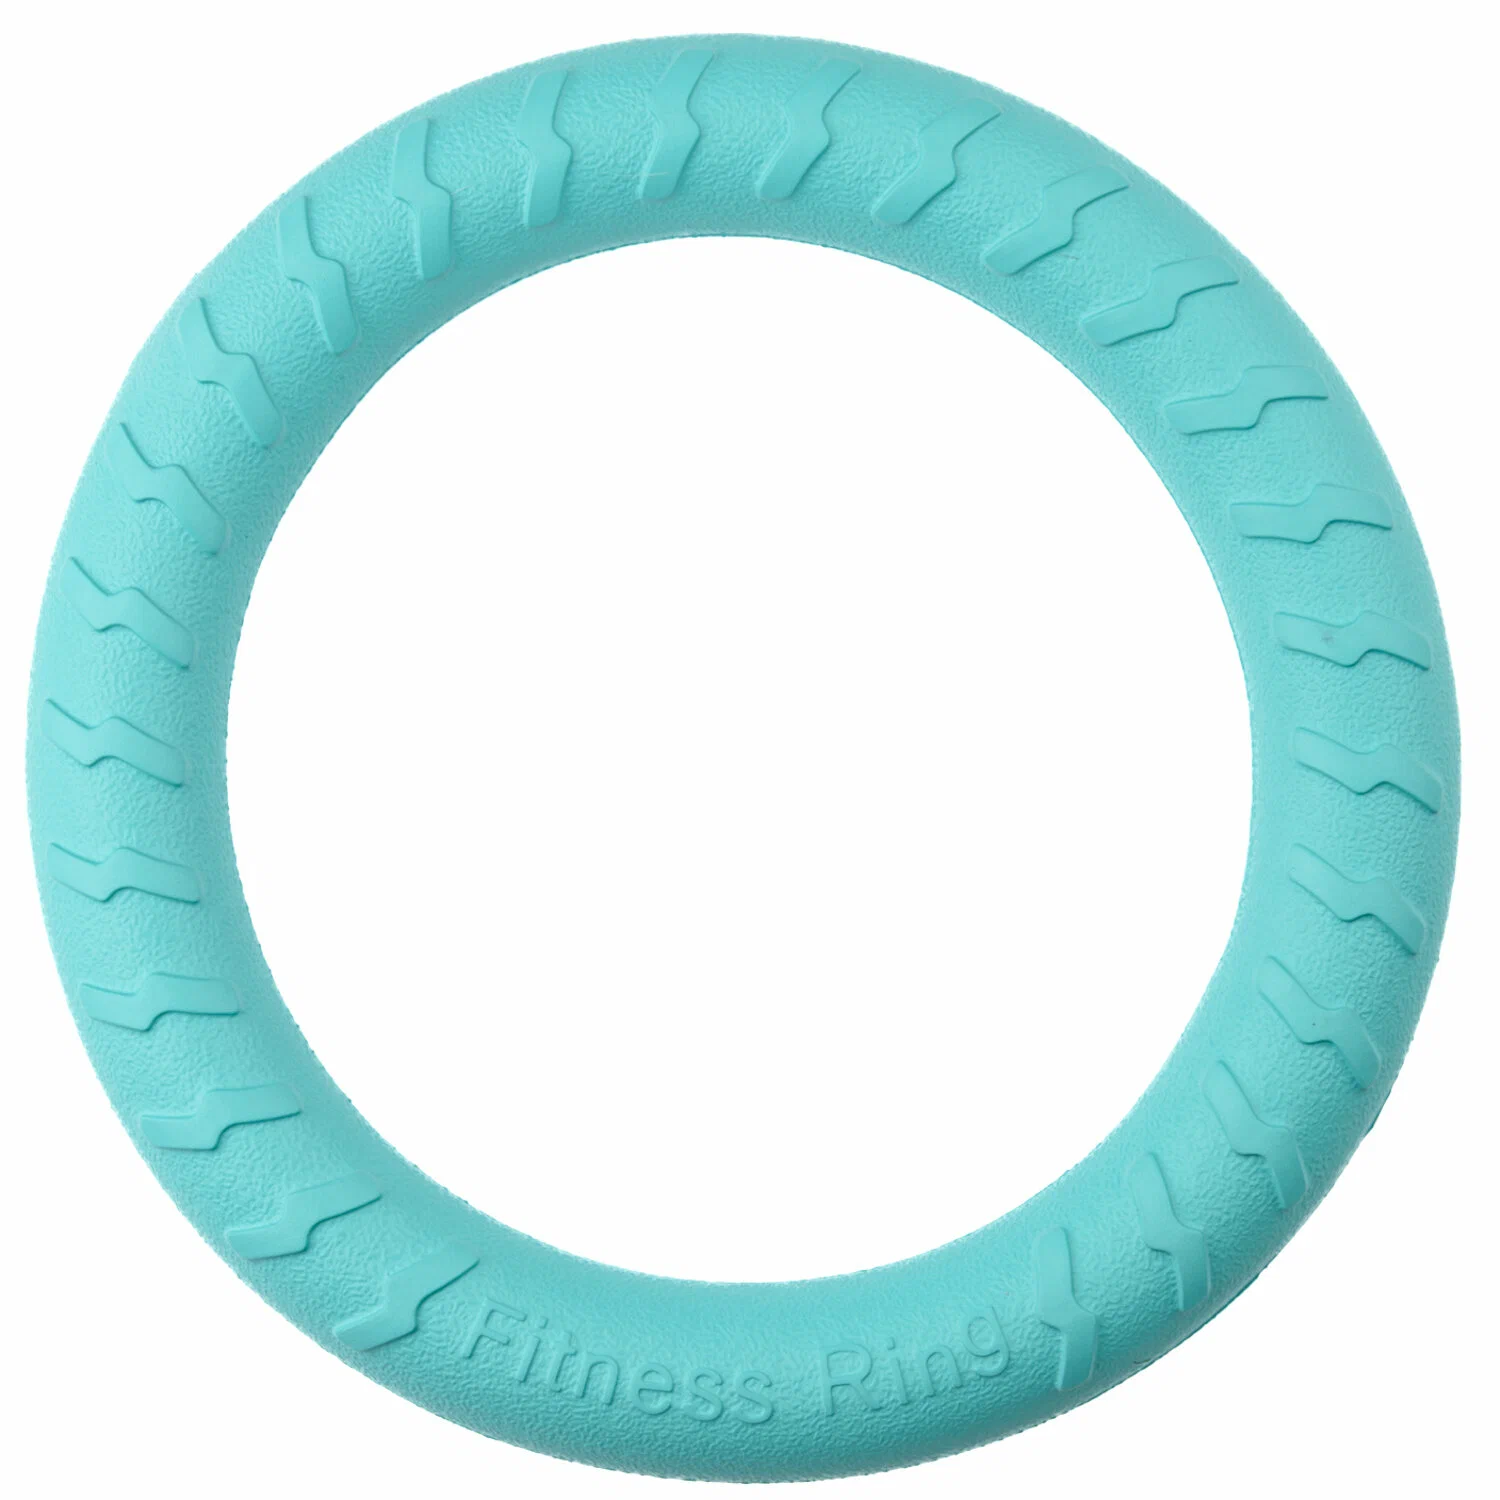 Игрушка Mr.Kranch д/собак Кольцо диаметр 28 см бирюзовая